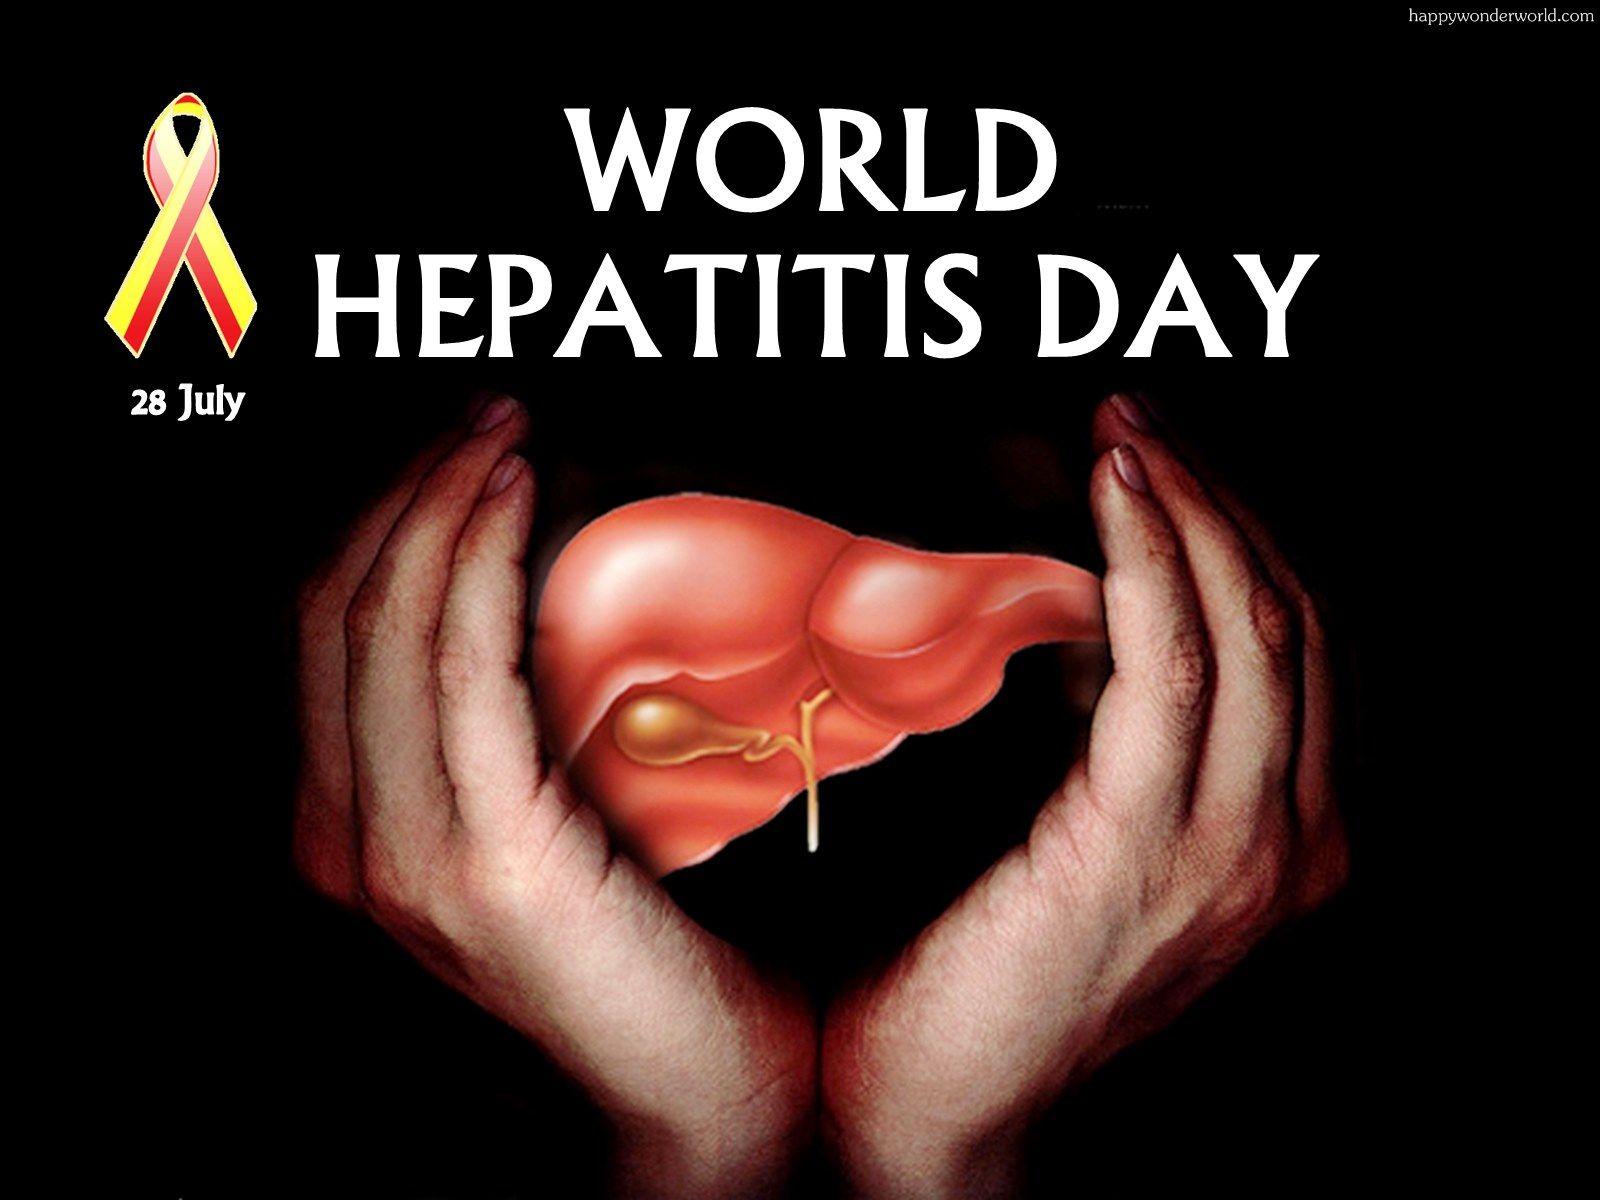 July World Hepatitis Day 2017 Image